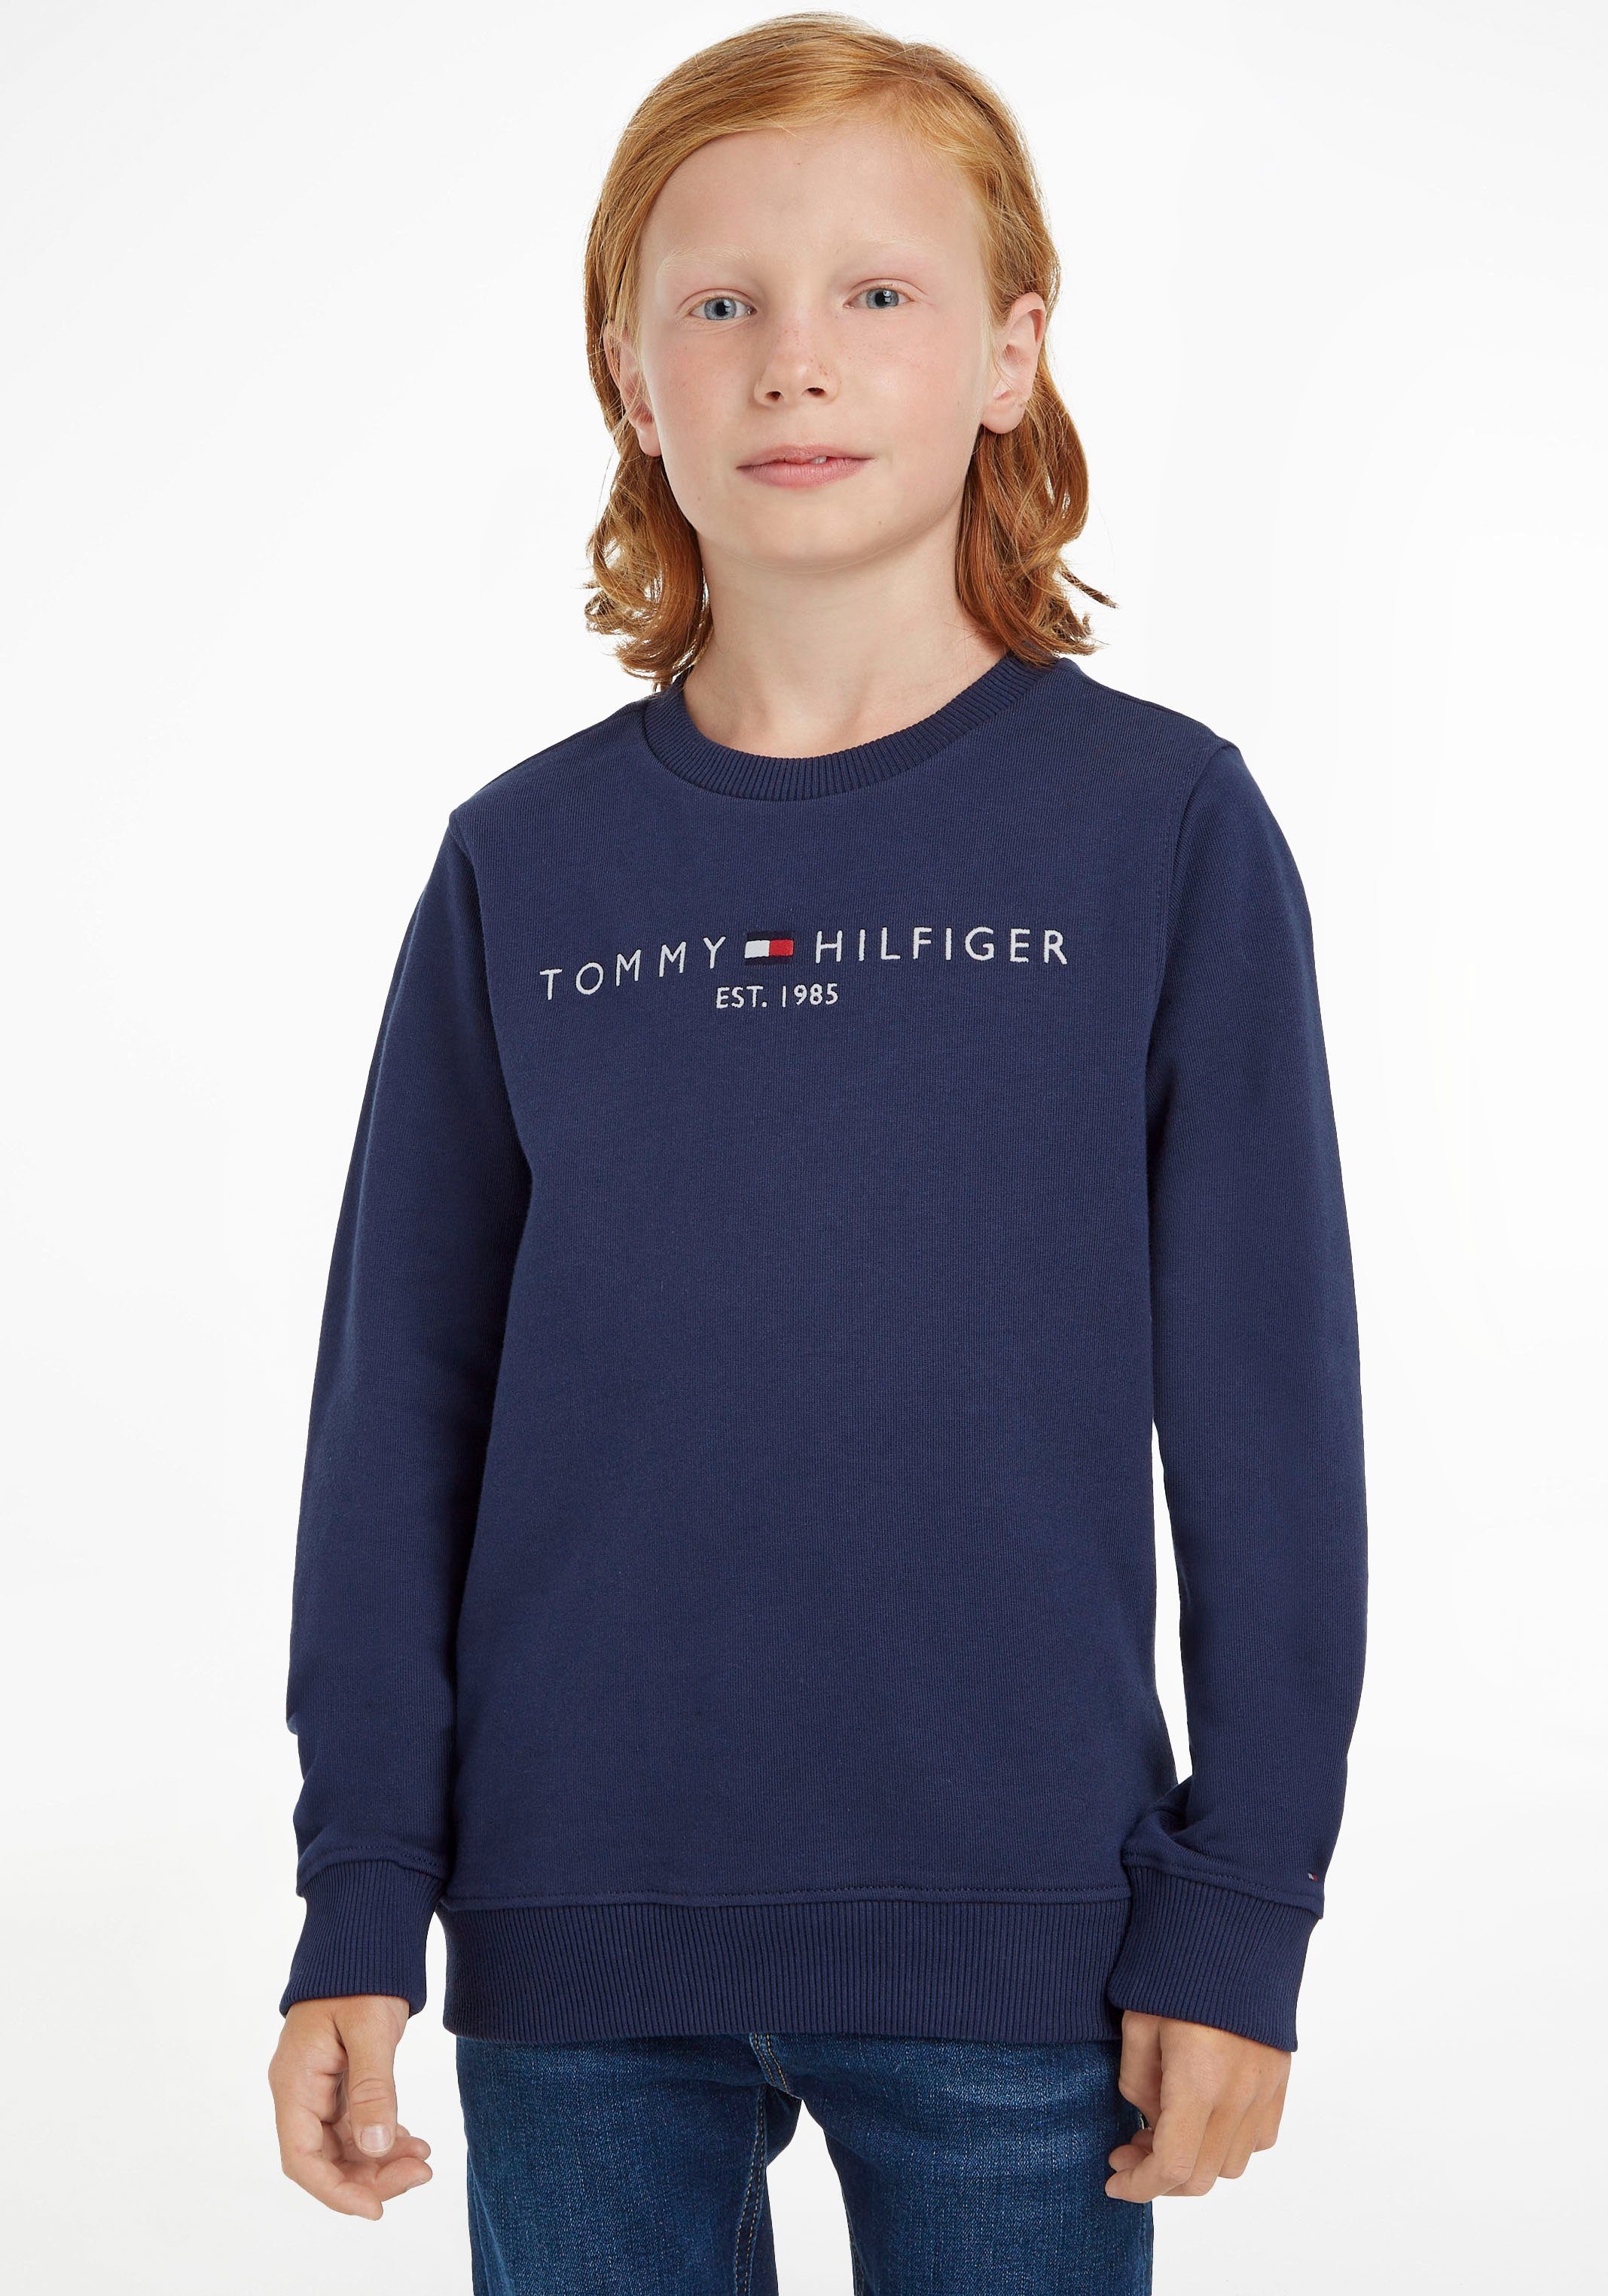 Tommy Hilfiger Sweatshirt ESSENTIAL SWEATSHIRT Jungen Junior Mädchen Kinder MiniMe,für und Kids